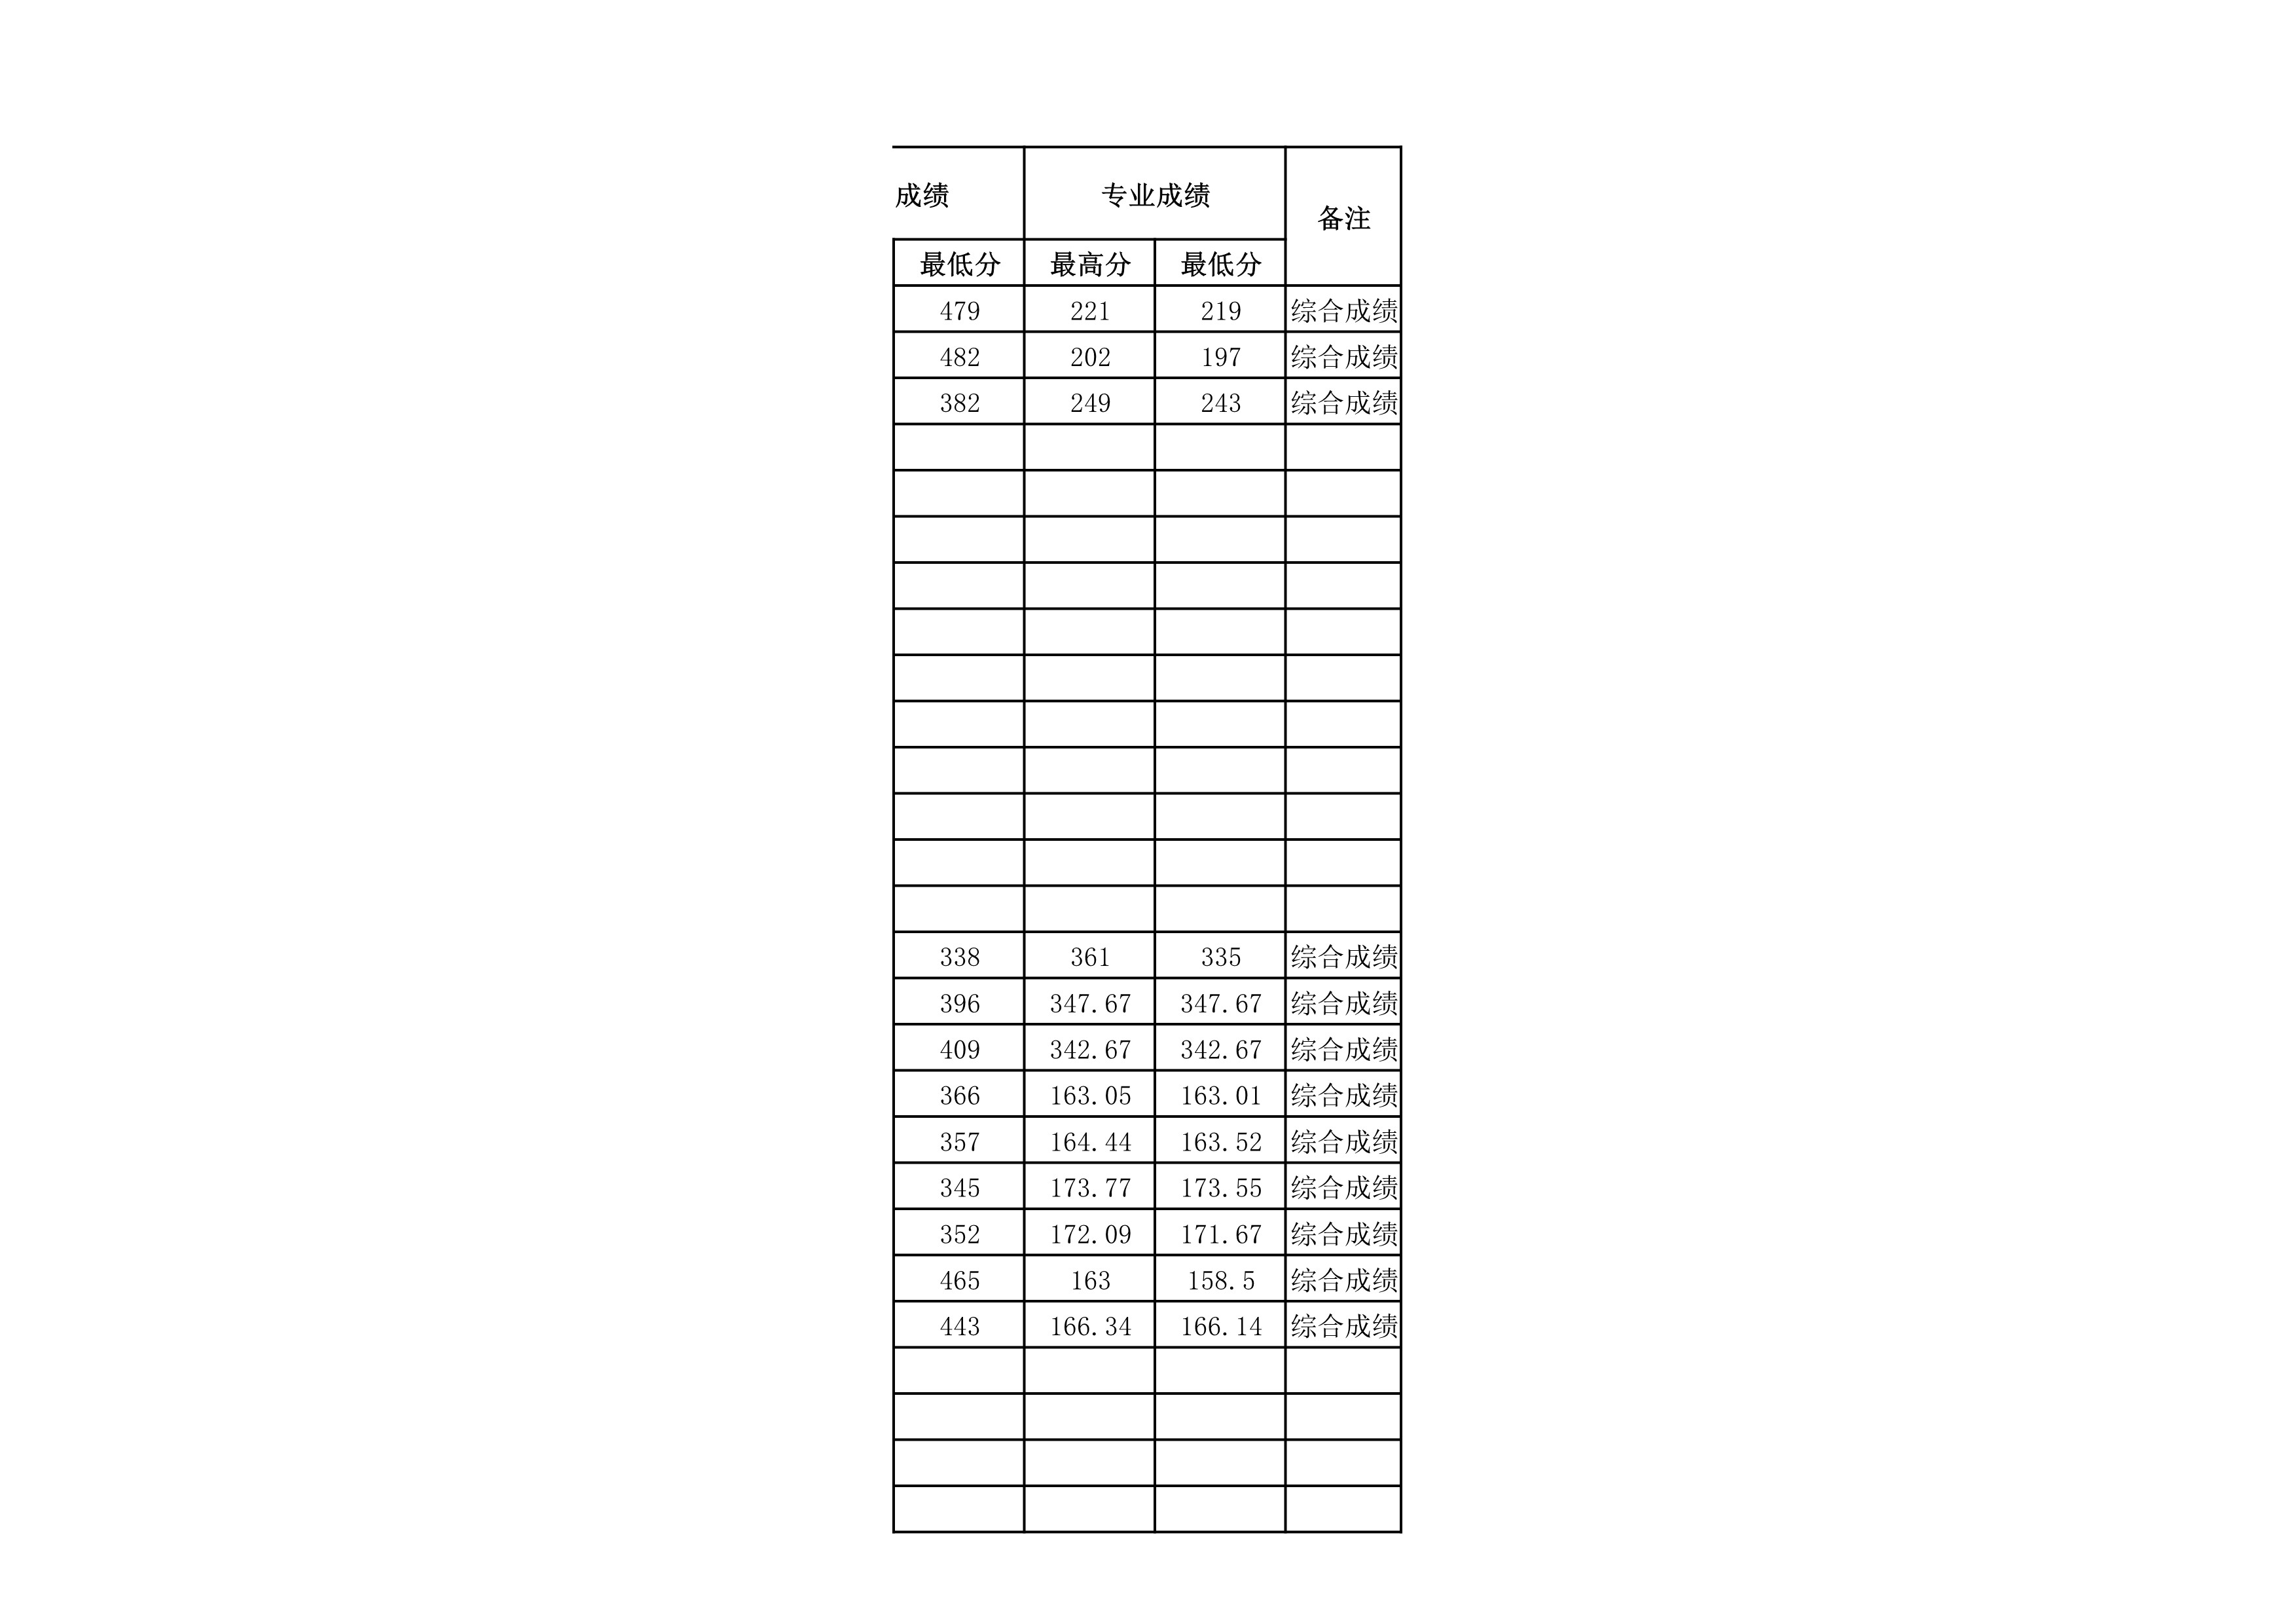 贵州民族大学2021年省外录取分数情况统计表_20220414154148_8.jpg